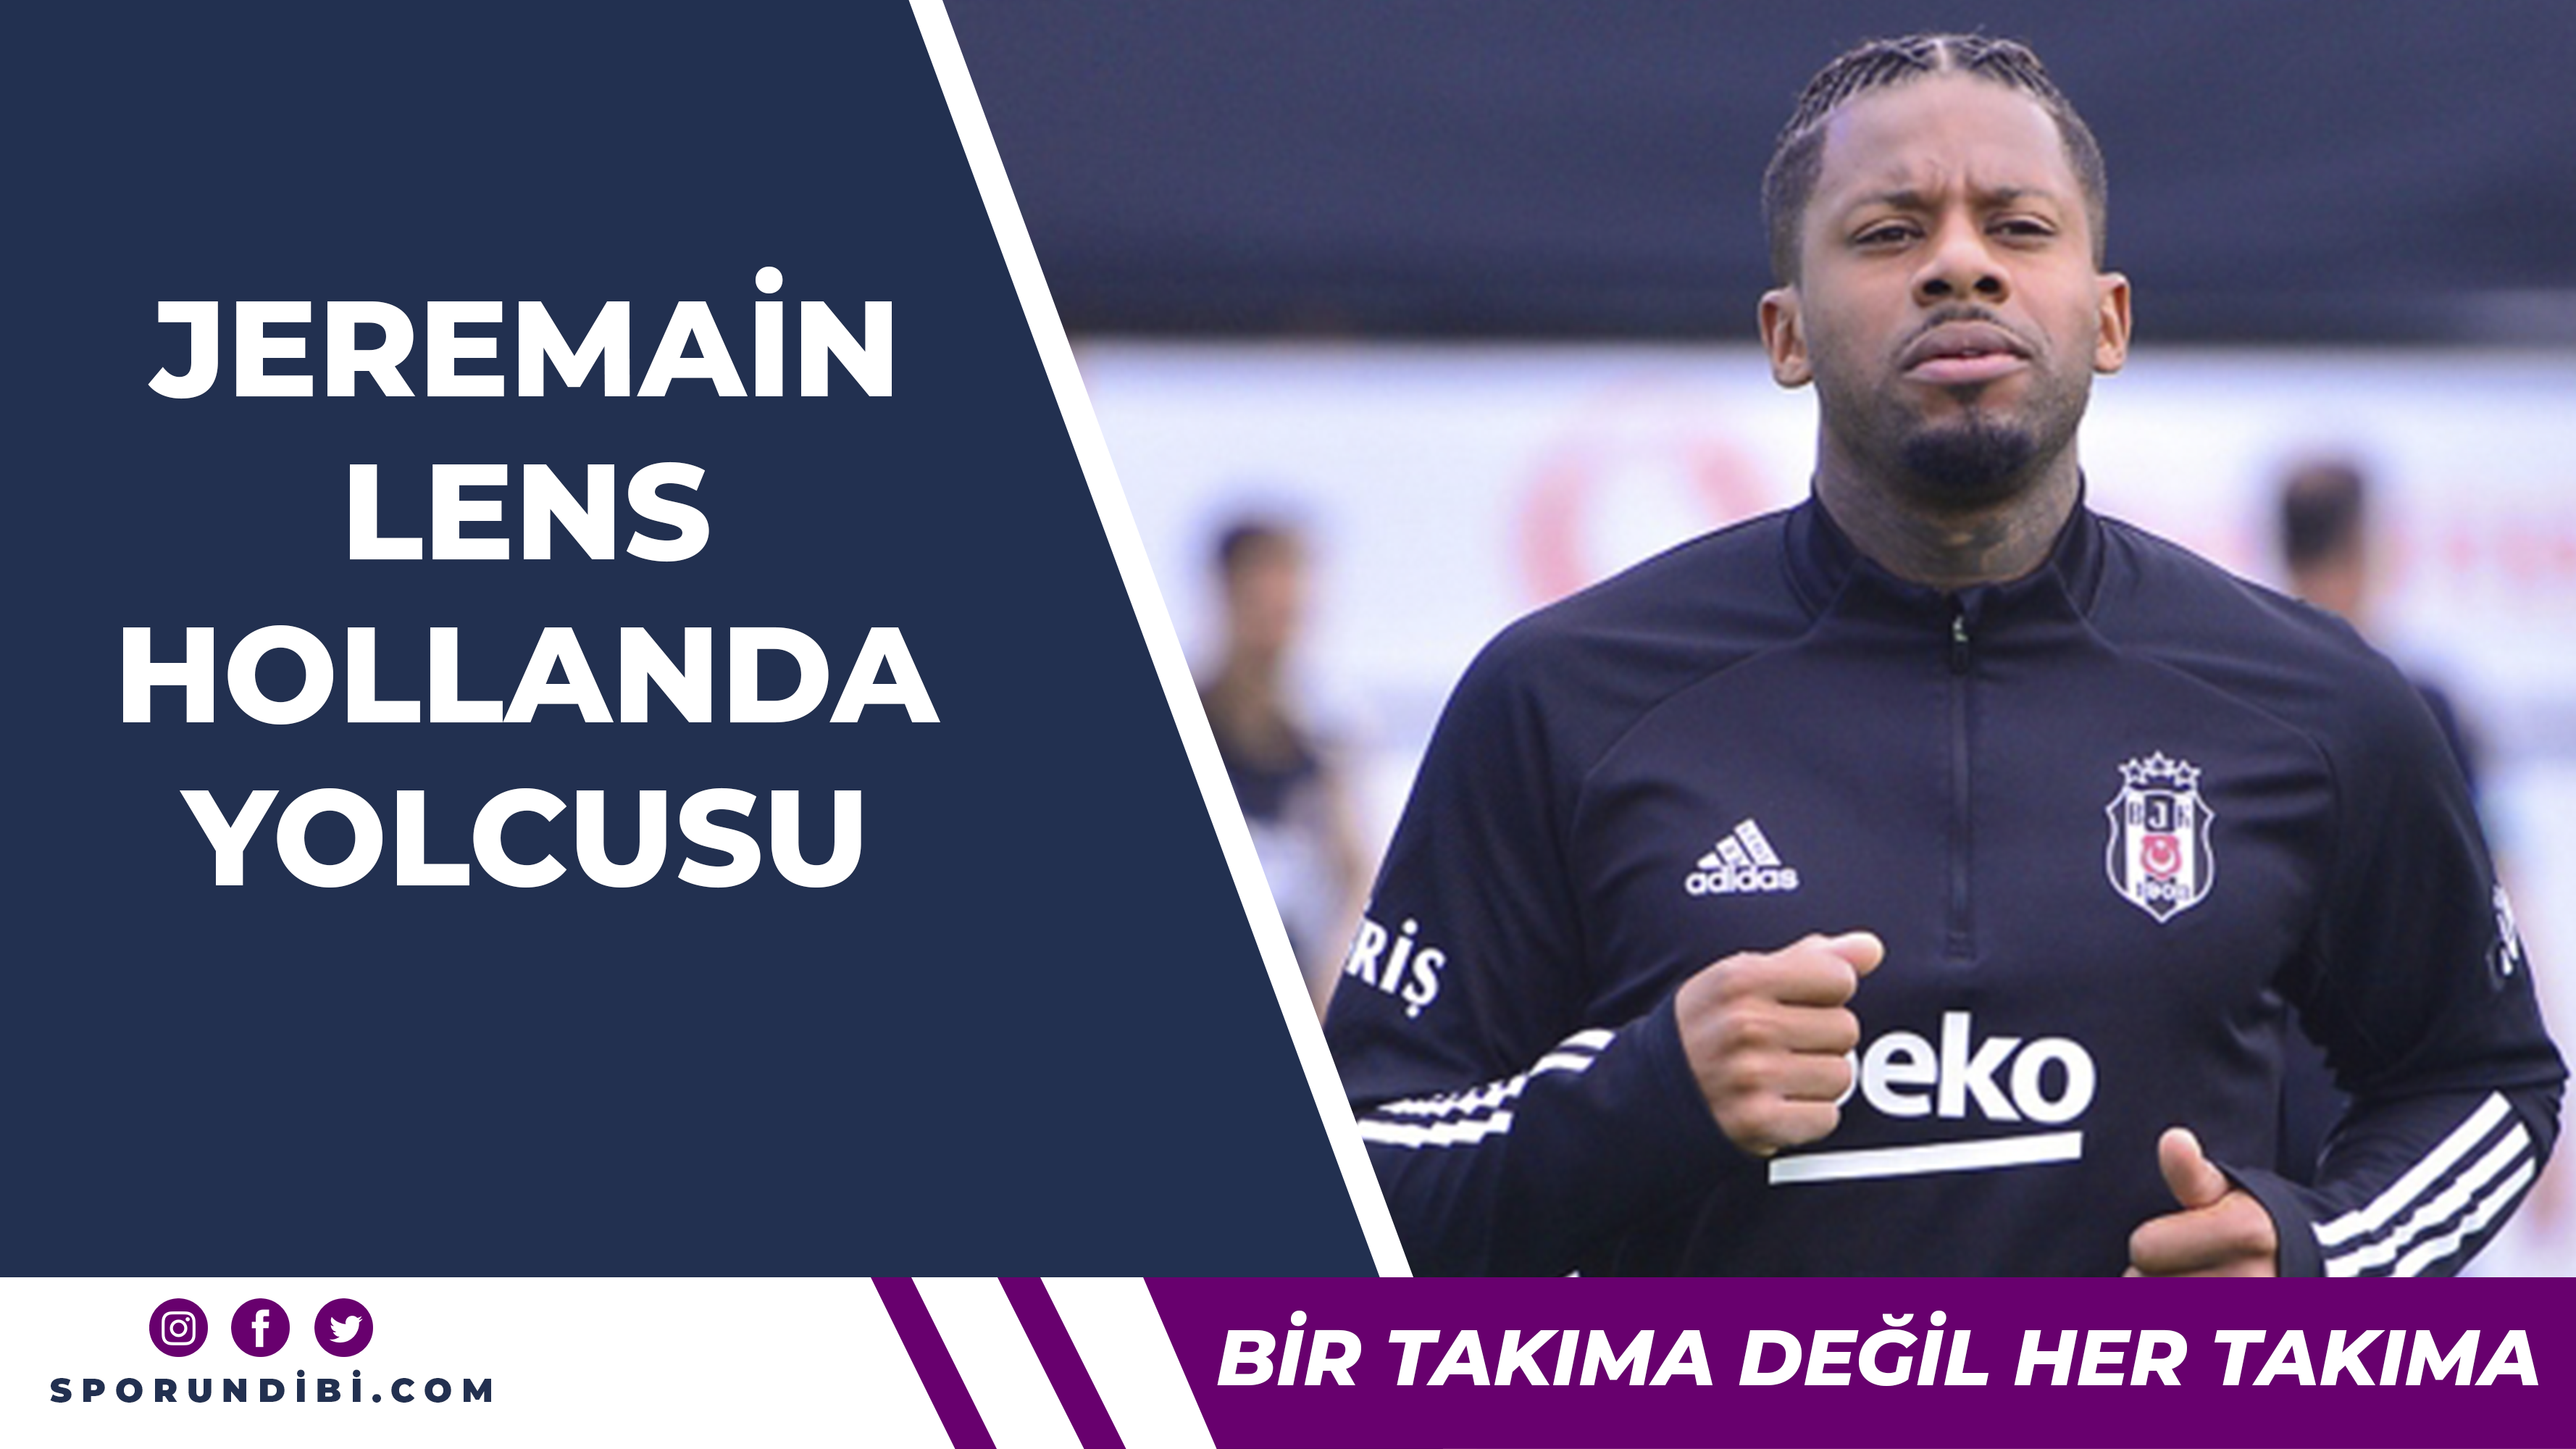 Lens Beşiktaş'tan ayrılıyor